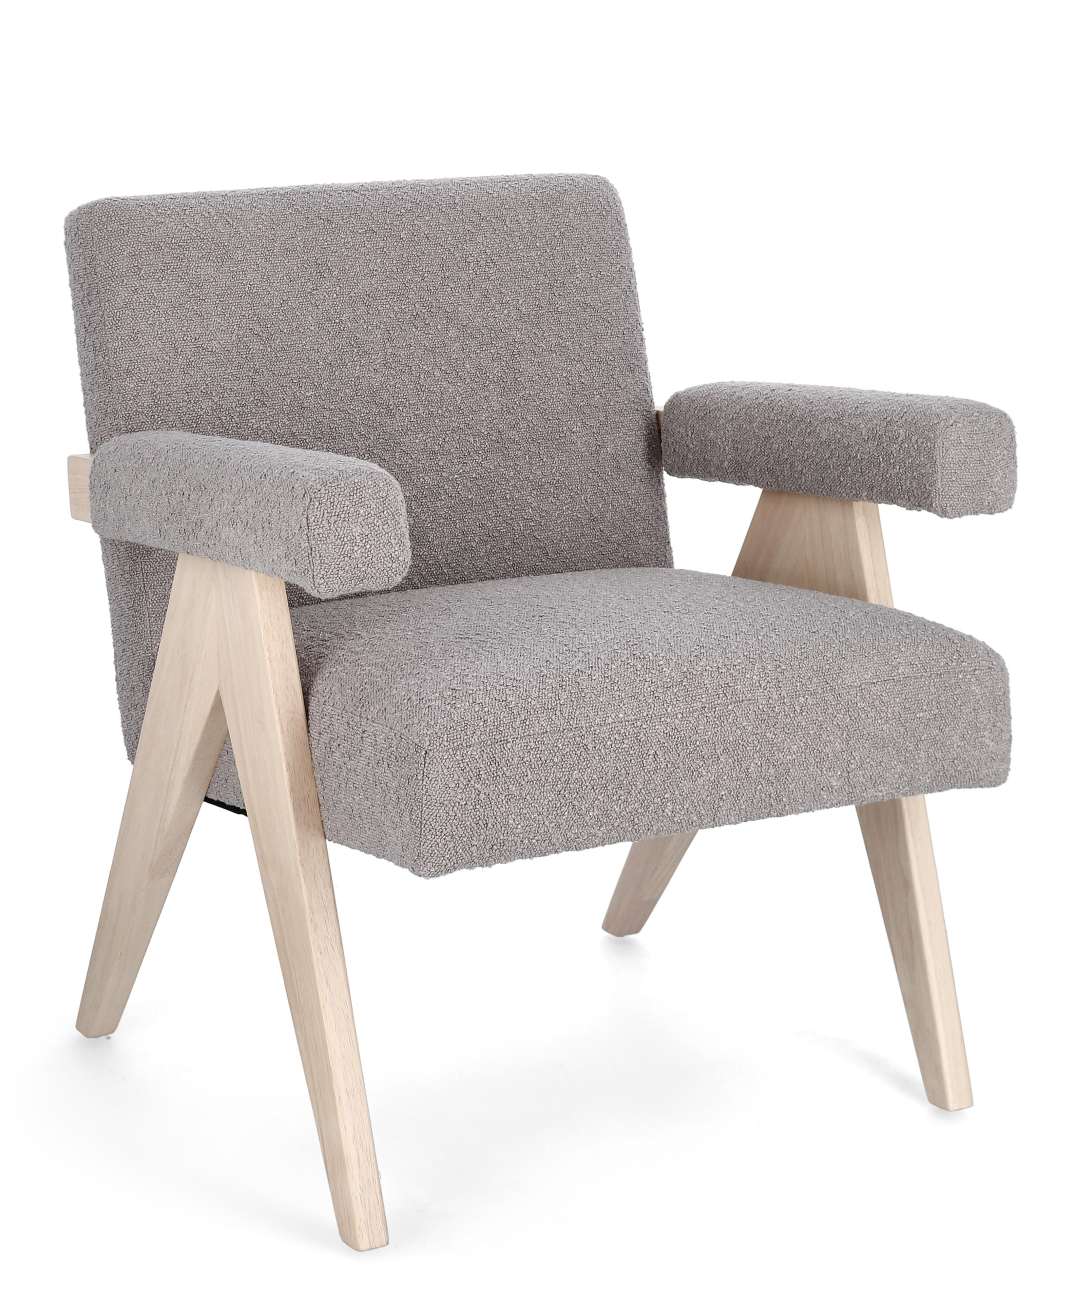 Der Sessel Faiza überzeugt mit seinem modernen Stil. Gefertigt wurde er aus Stoff, welcher einen grauen Farbton besitzt. Das Gestell ist aus Kautschuk und hat eine natürliche Farbe. Der Sessel besitzt eine Sitzhöhe von 46 cm.